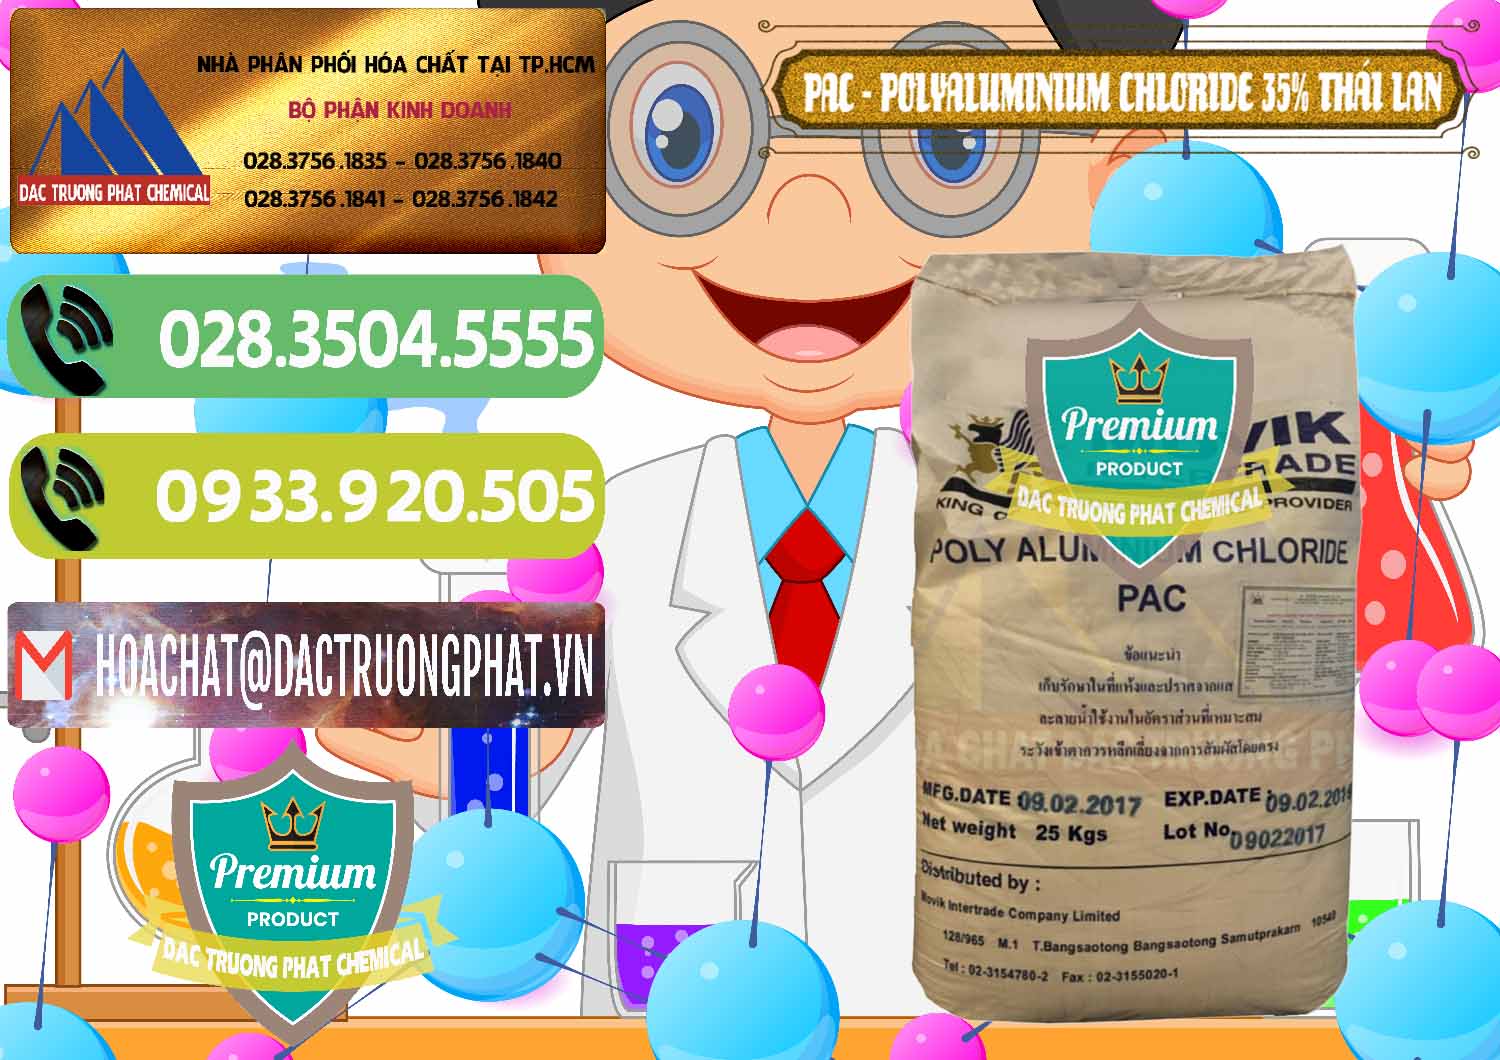 Nơi chuyên nhập khẩu _ bán PAC - Polyaluminium Chloride 35% Thái Lan Thailand - 0470 - Công ty chuyên bán & phân phối hóa chất tại TP.HCM - hoachatmientay.vn